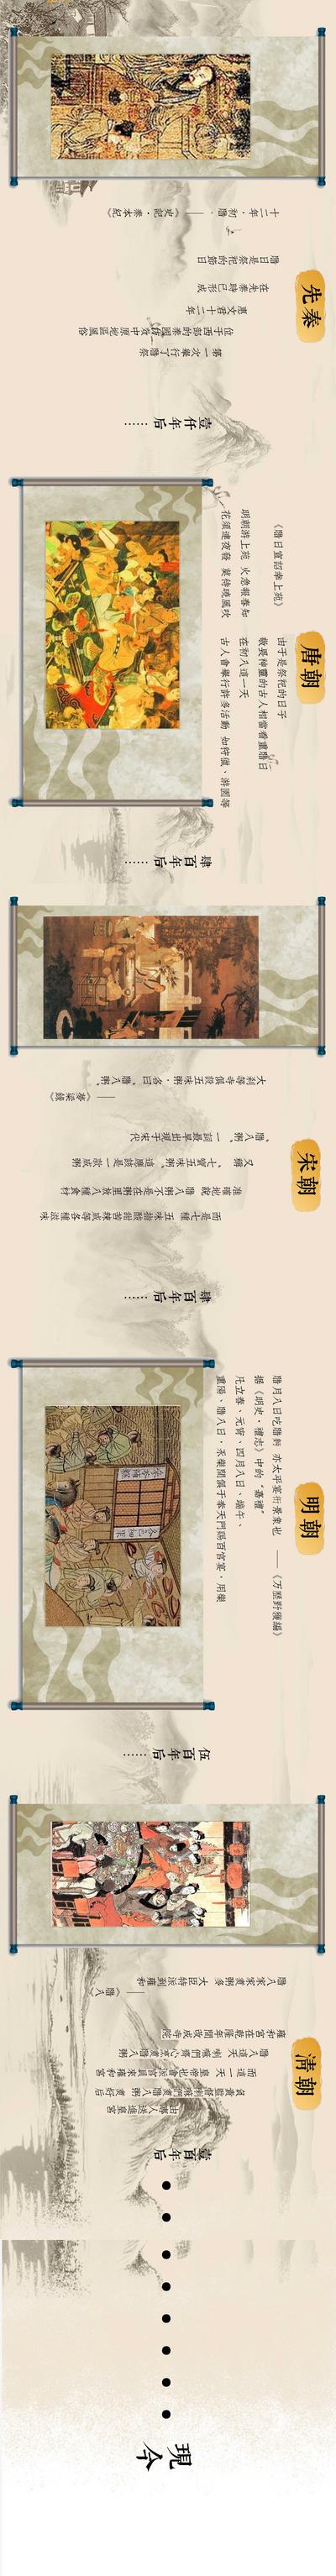 南门网 专题设计 中国传统节日 腊八 古典 名画 卷轴 历史 发展 宣传